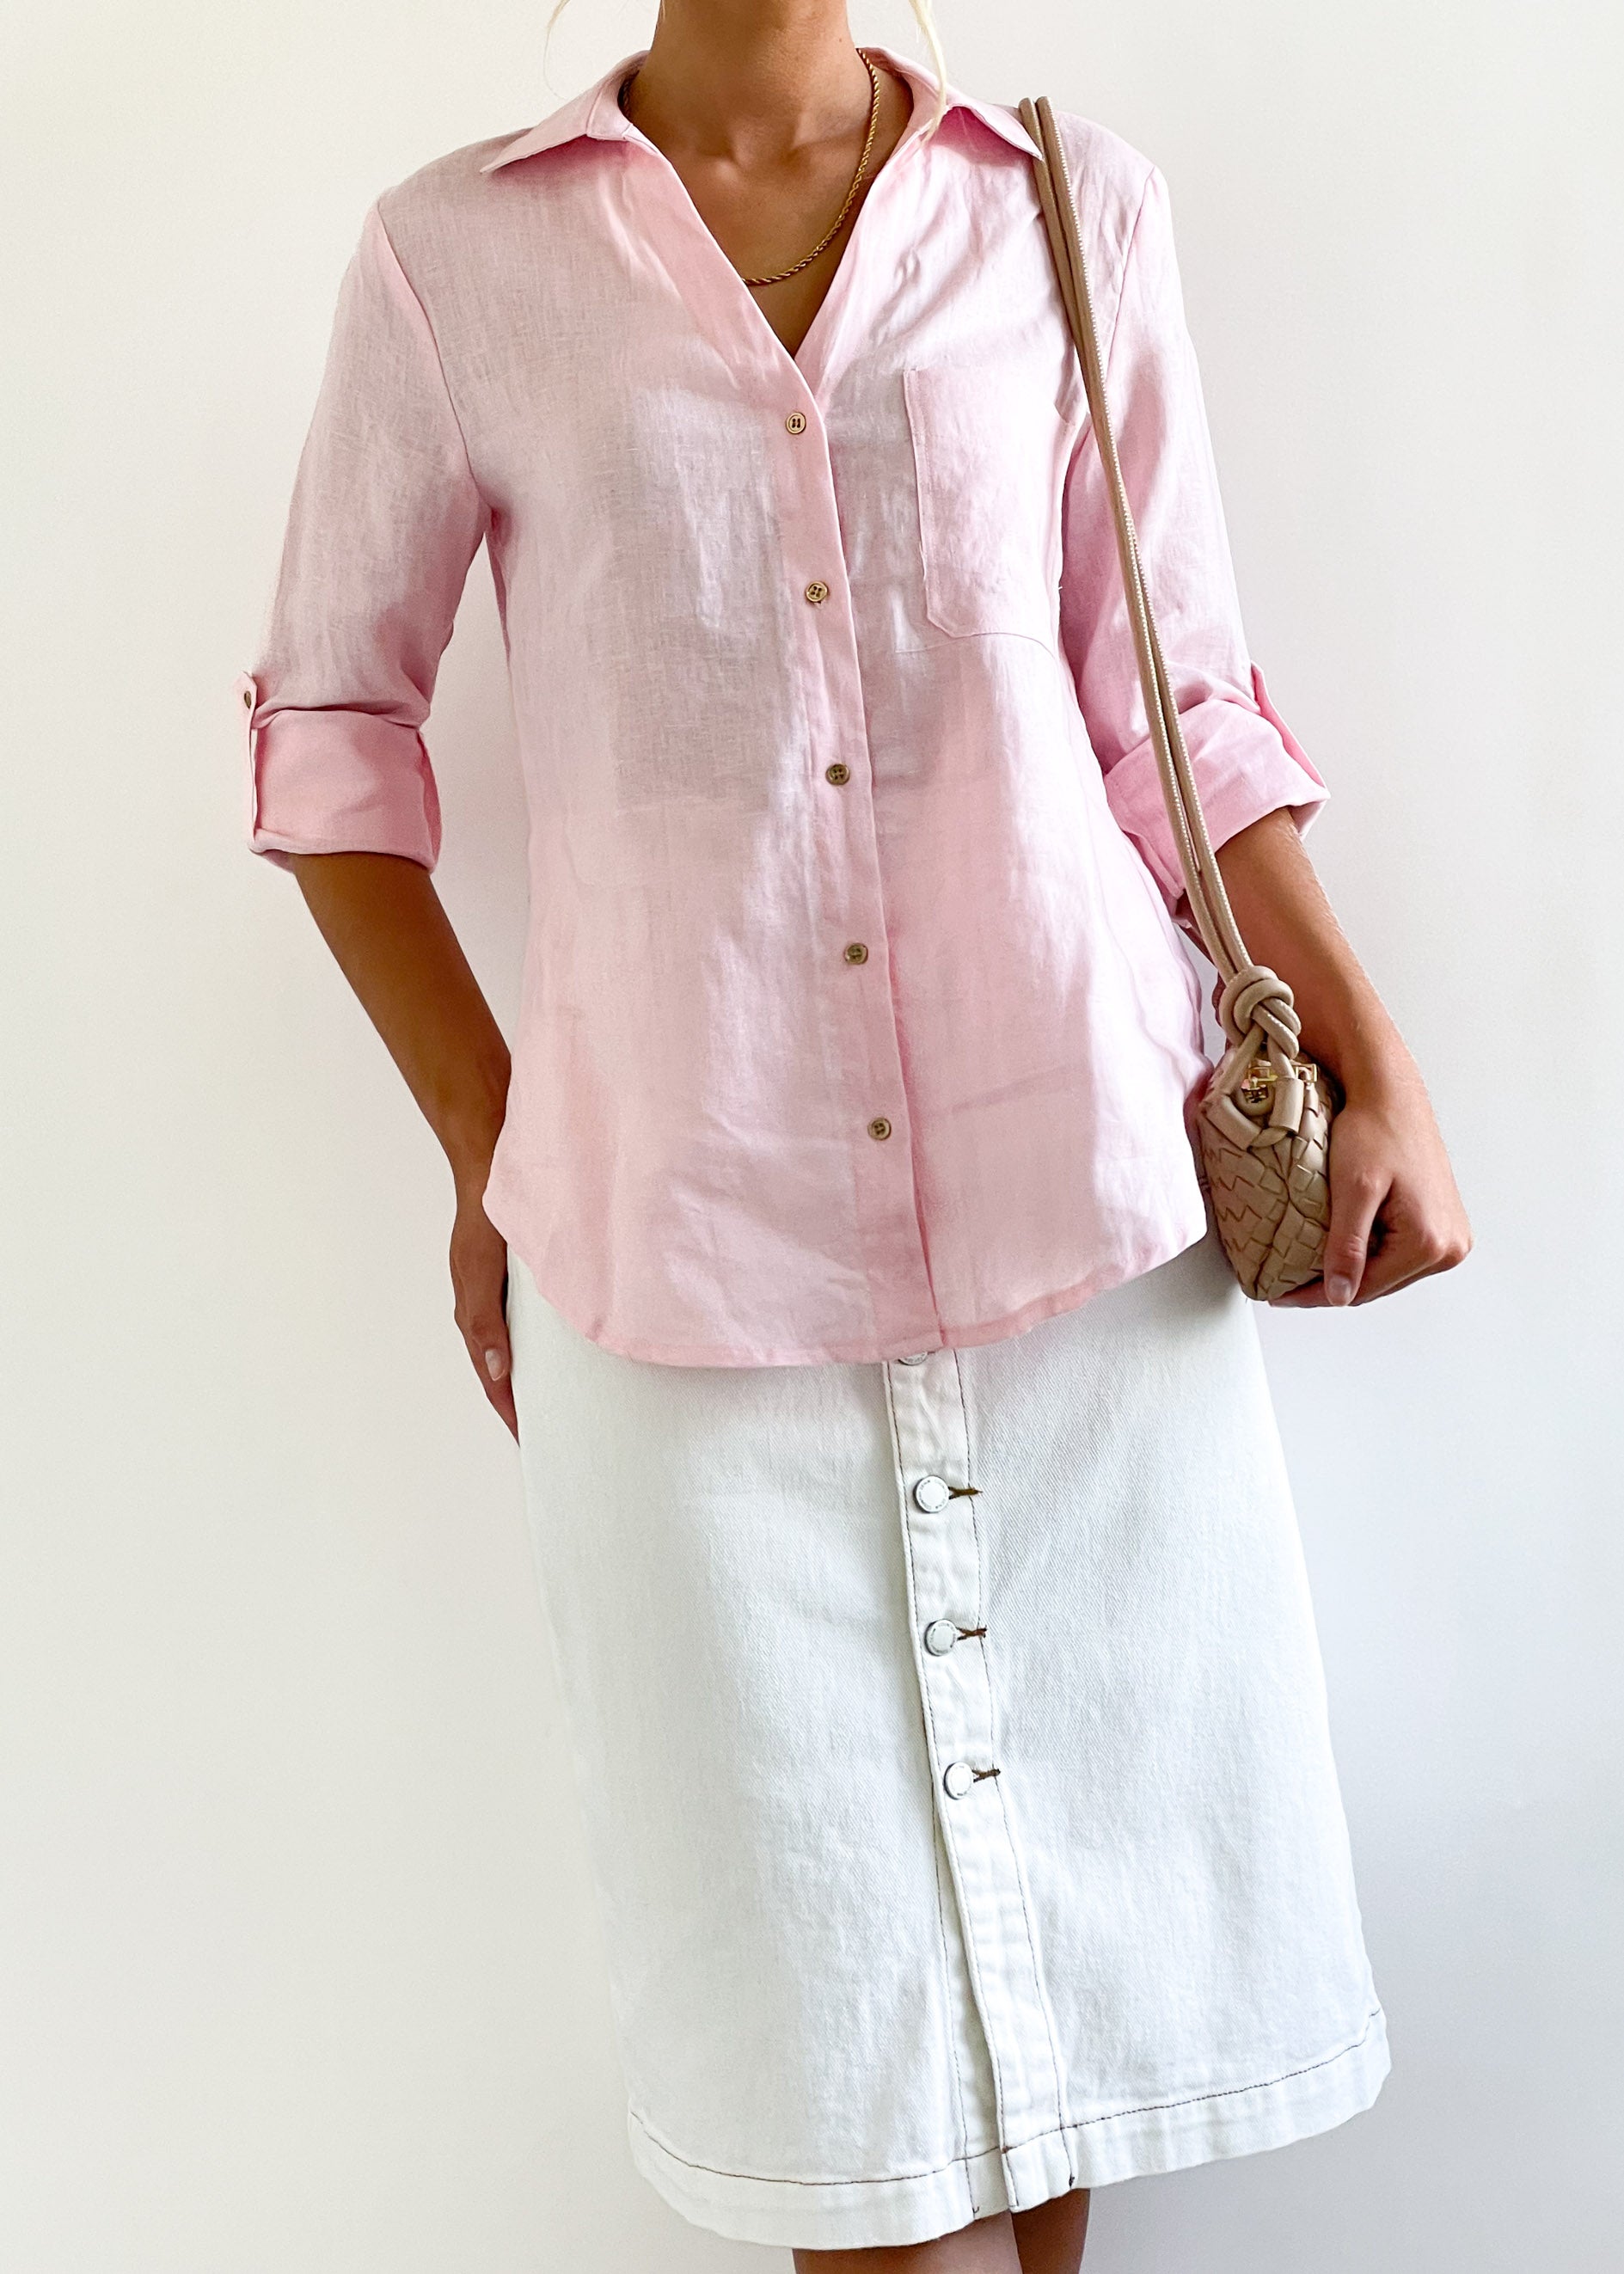 Muscari Linen Shirt - Blush